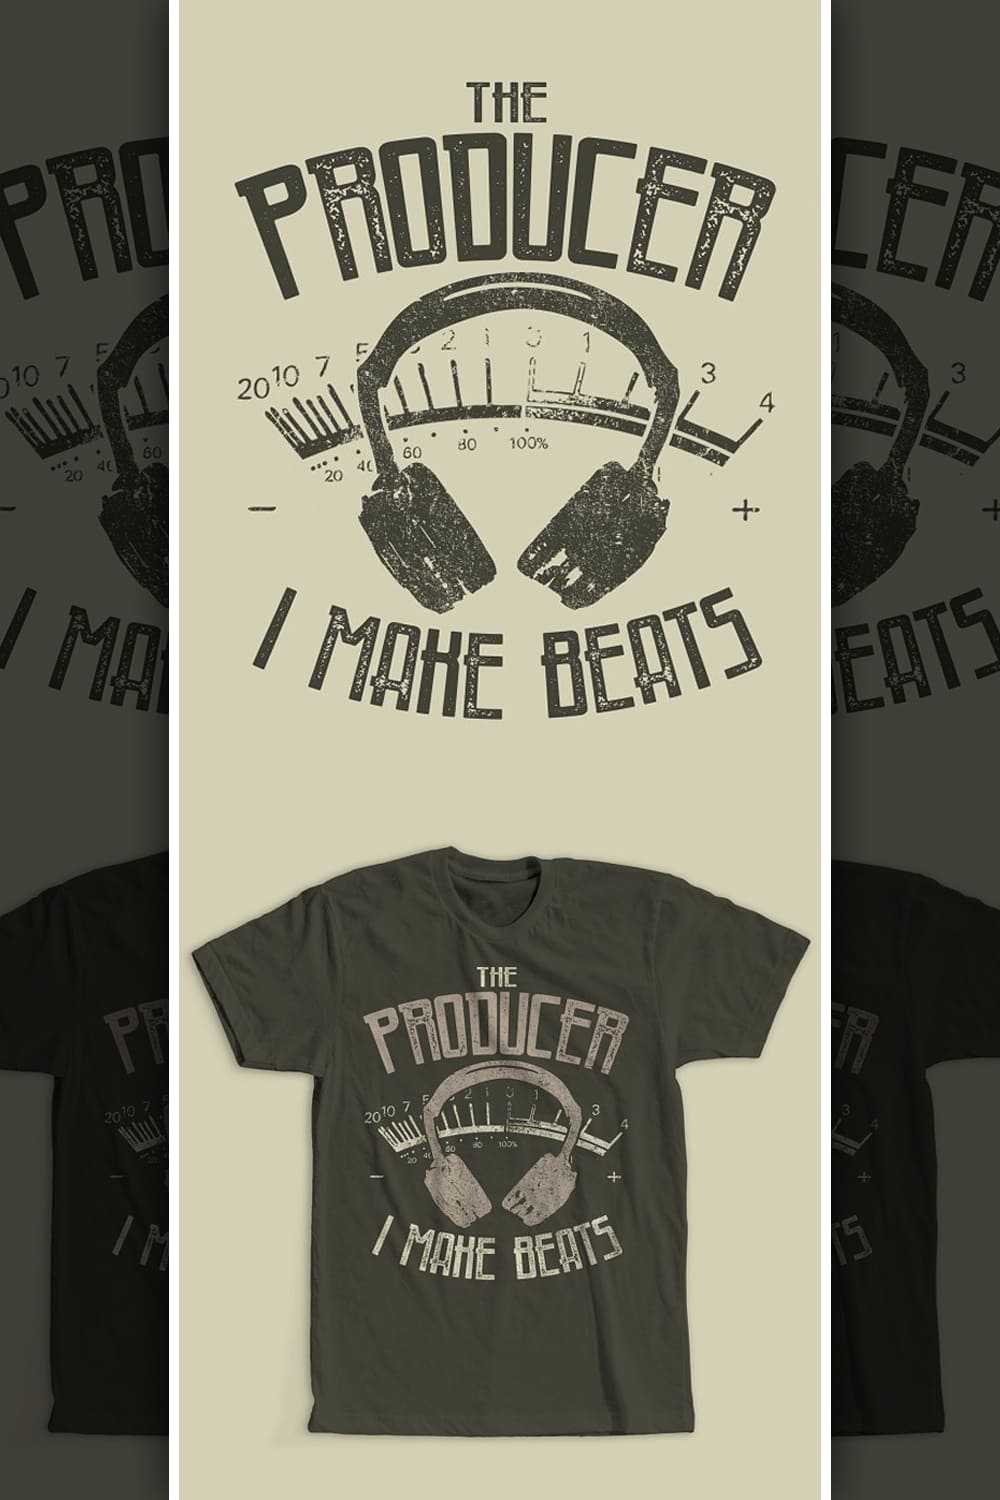 Music Producer T-Shirt Design - Pinterest.